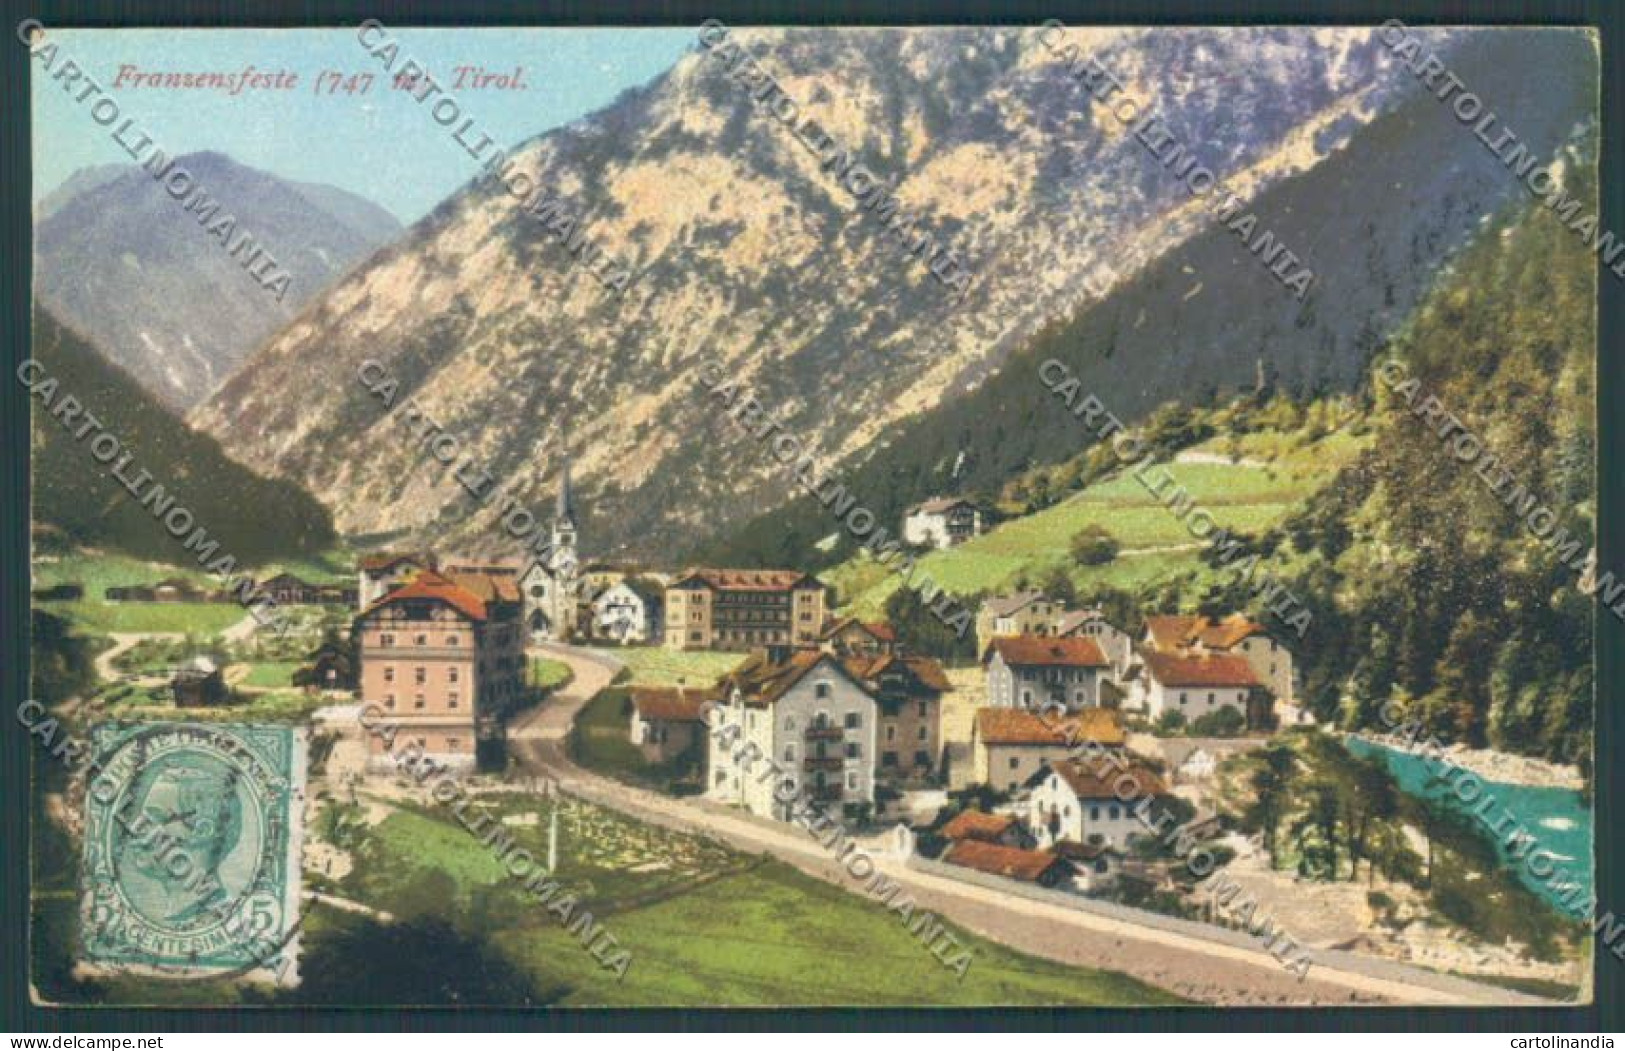 Bolzano Fortezza Cartolina ZT9910 - Bolzano (Bozen)